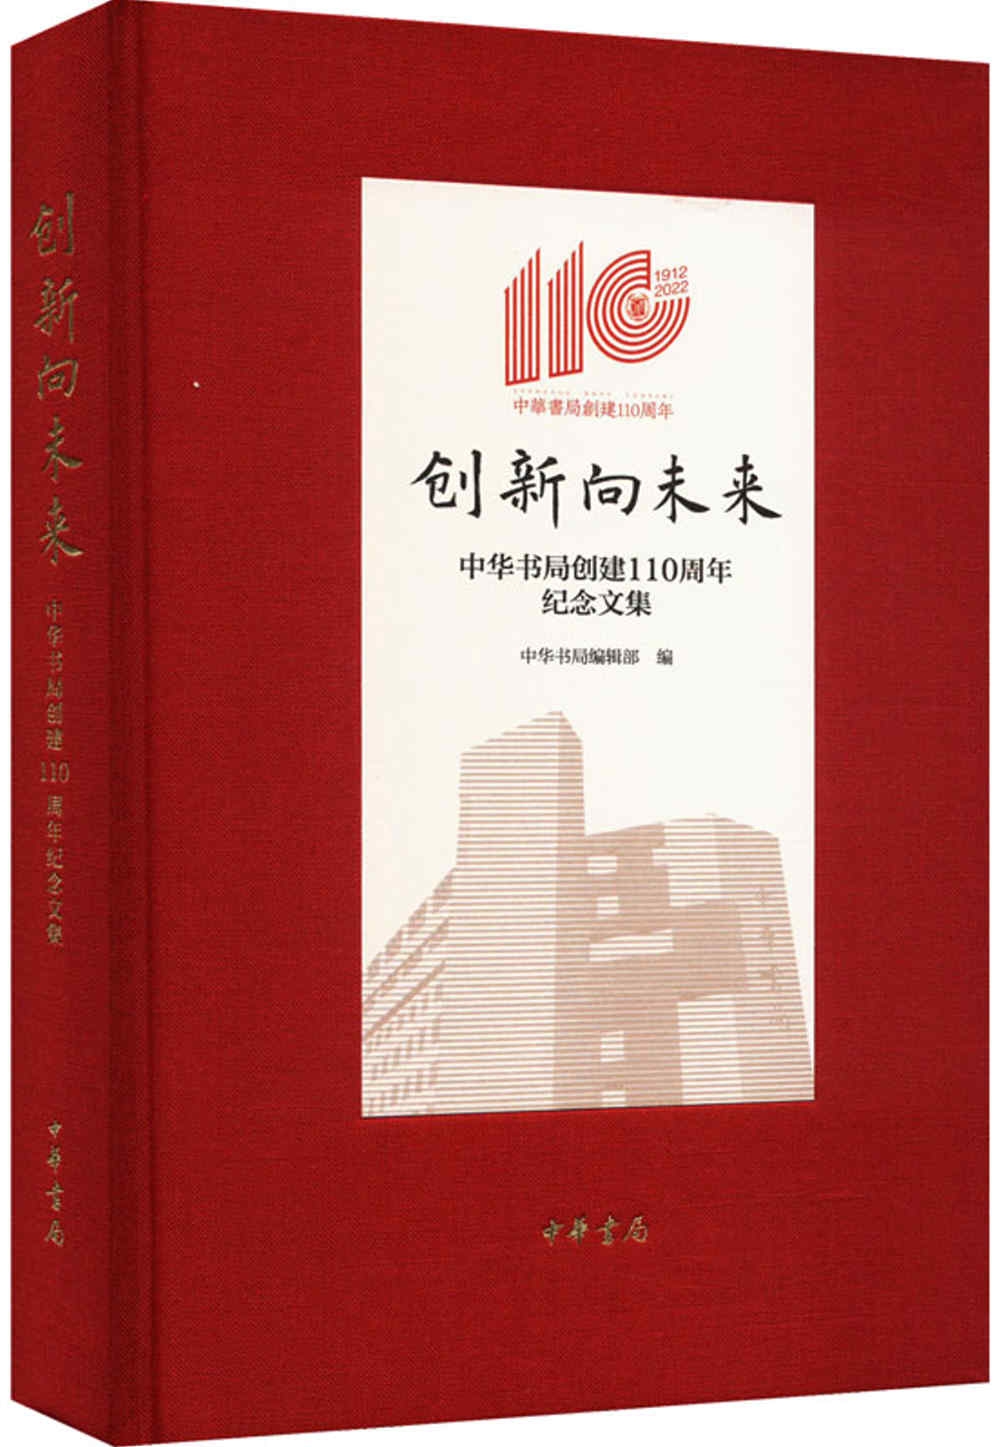 創新向未來：中華書局創建110周年紀念文集